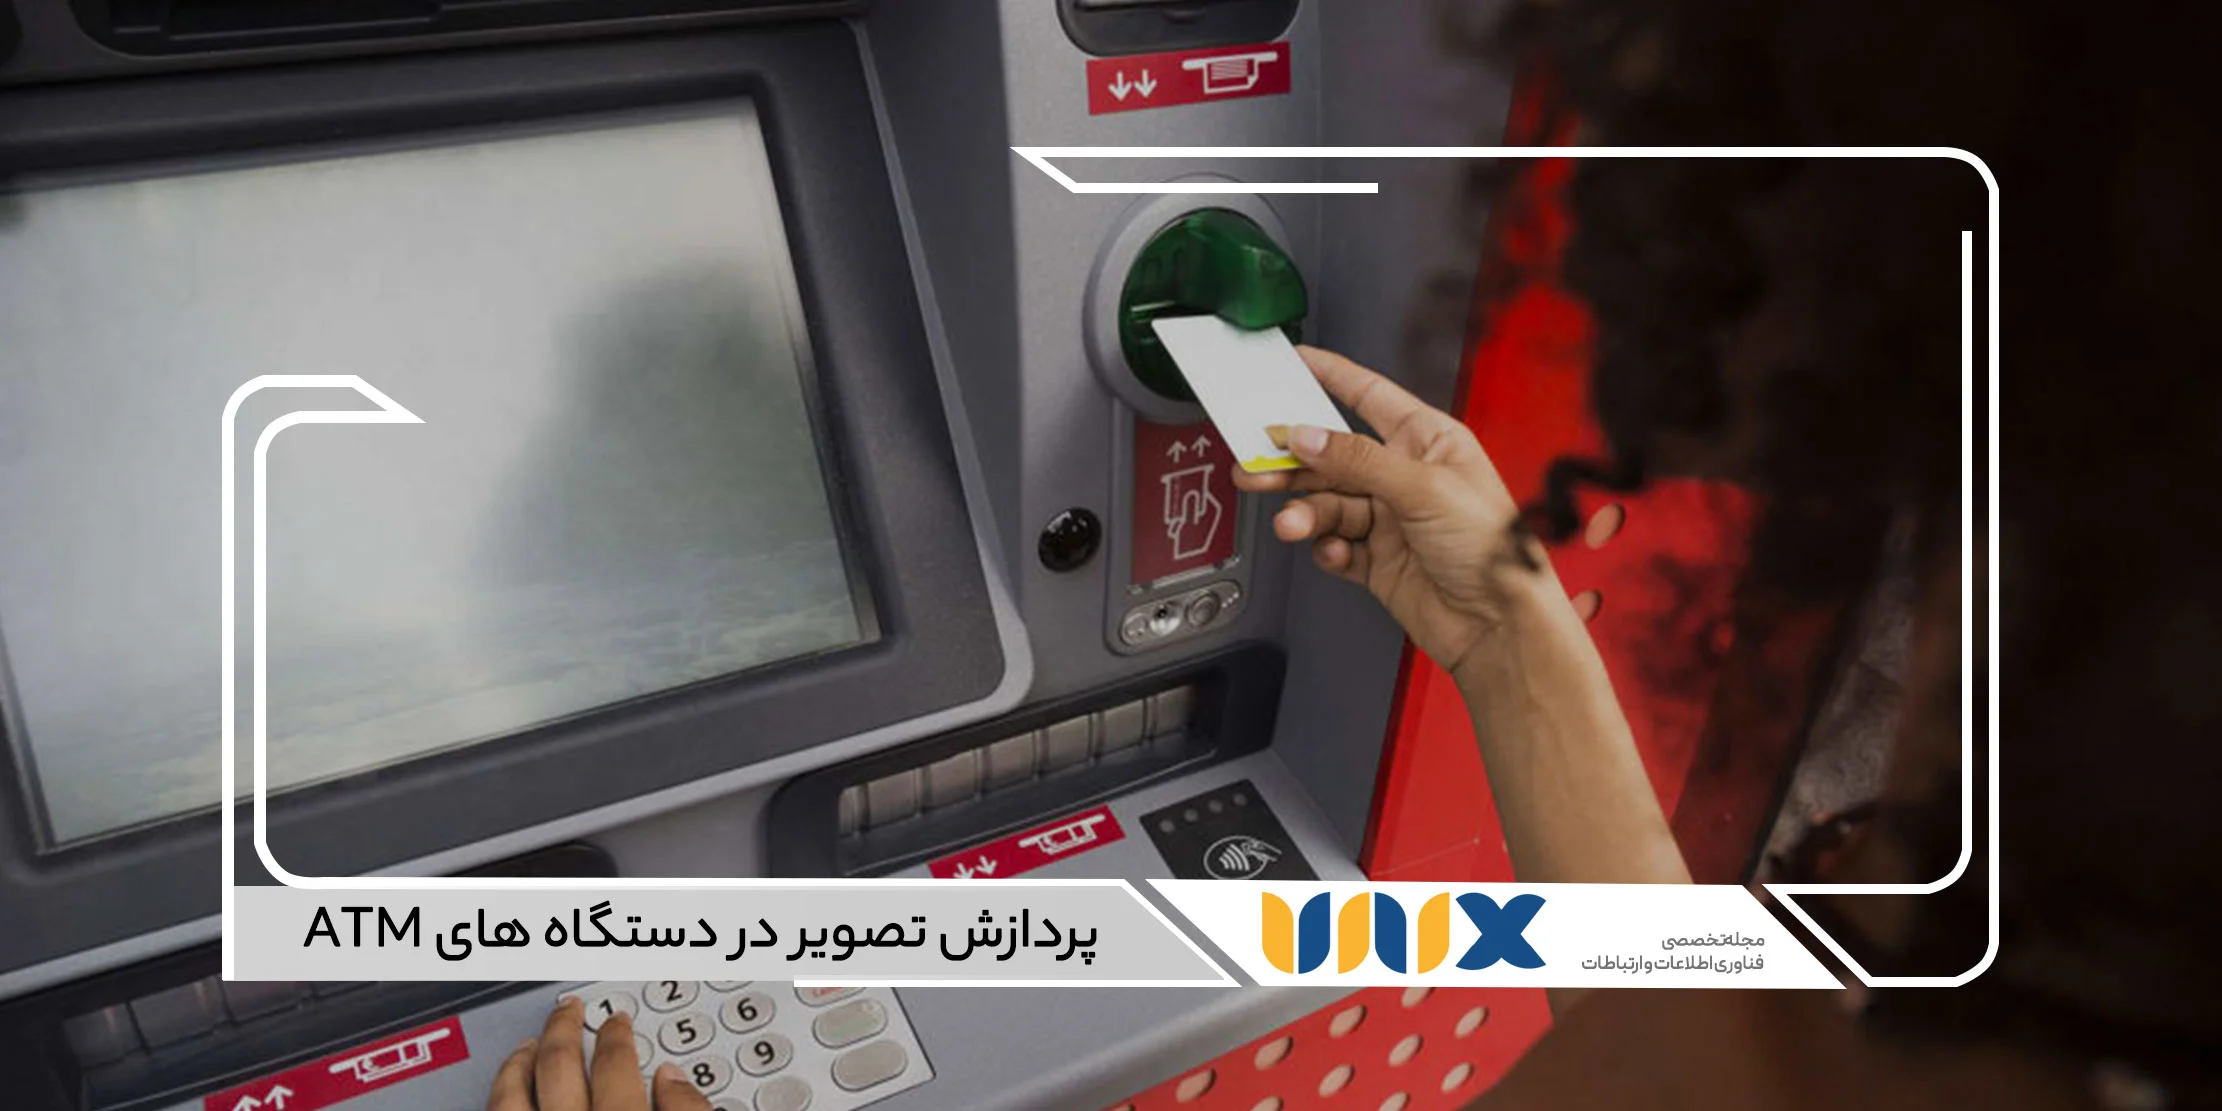 پردازش تصویر در دستگاه های ATM